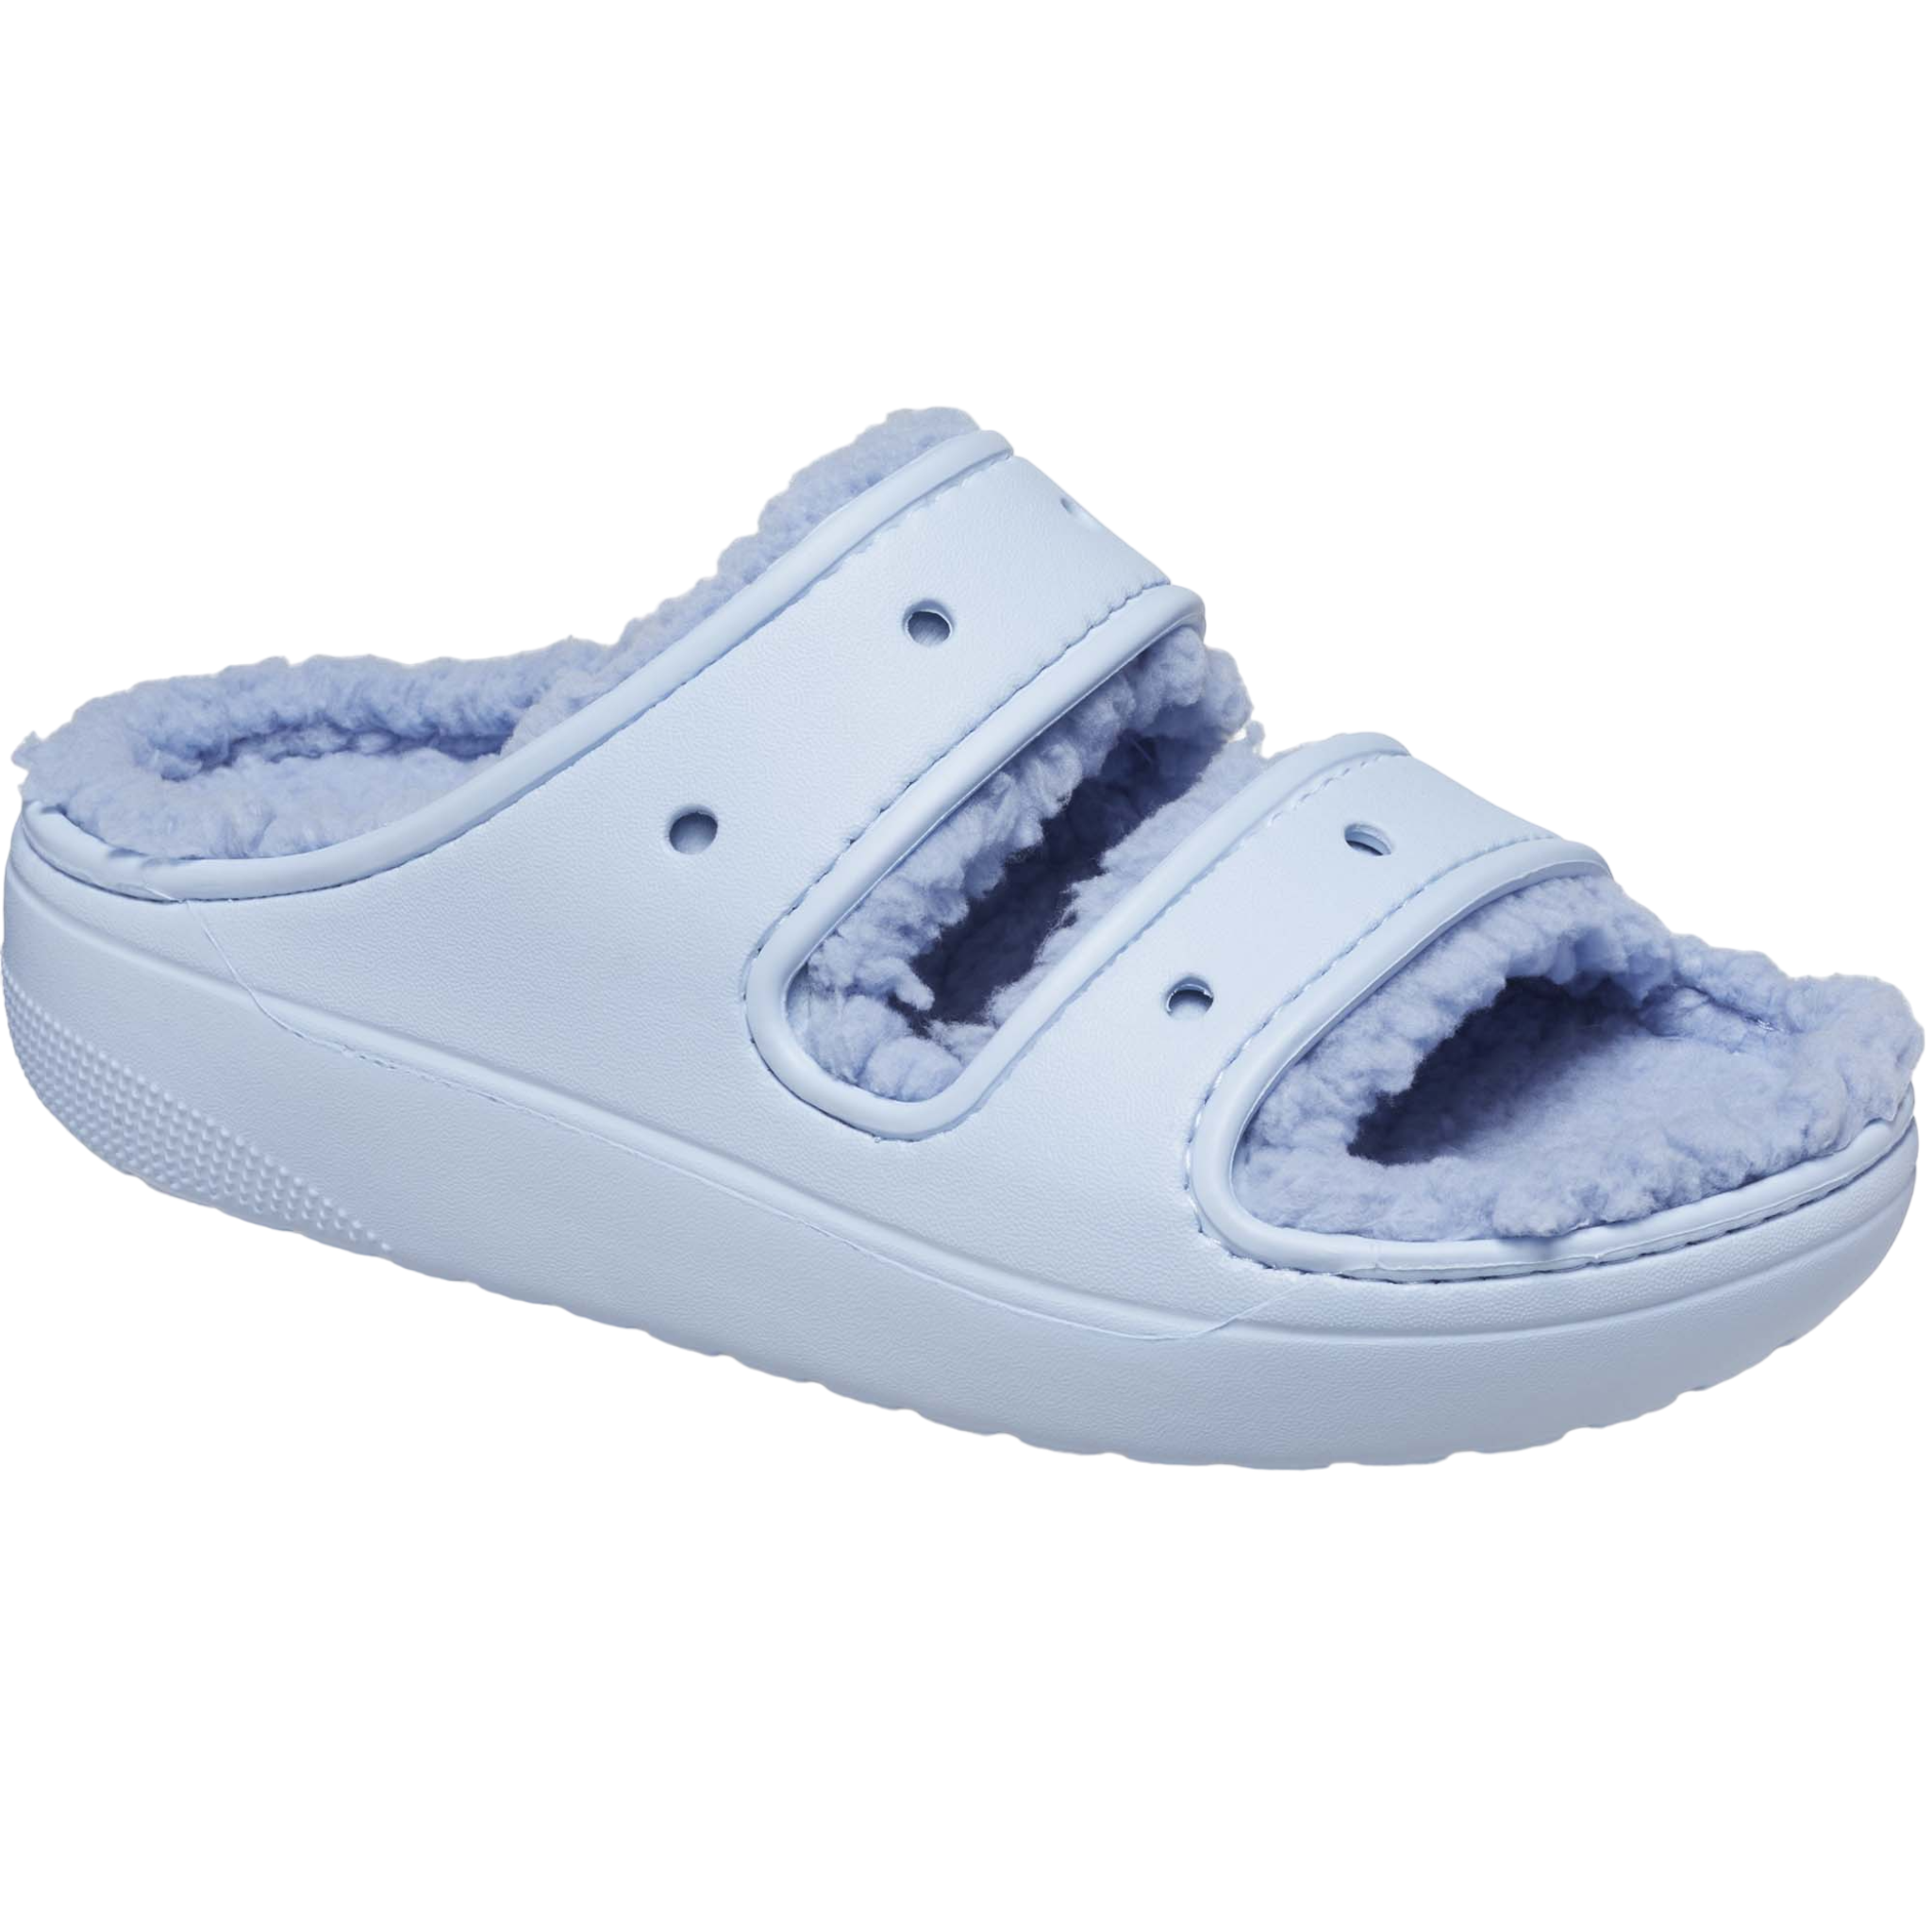 Classic Cozzzy Sandal - shoe&amp;me - Crocs - Crocs - Sandals, Slides/Scuffs, Slippers, Summer, Winter